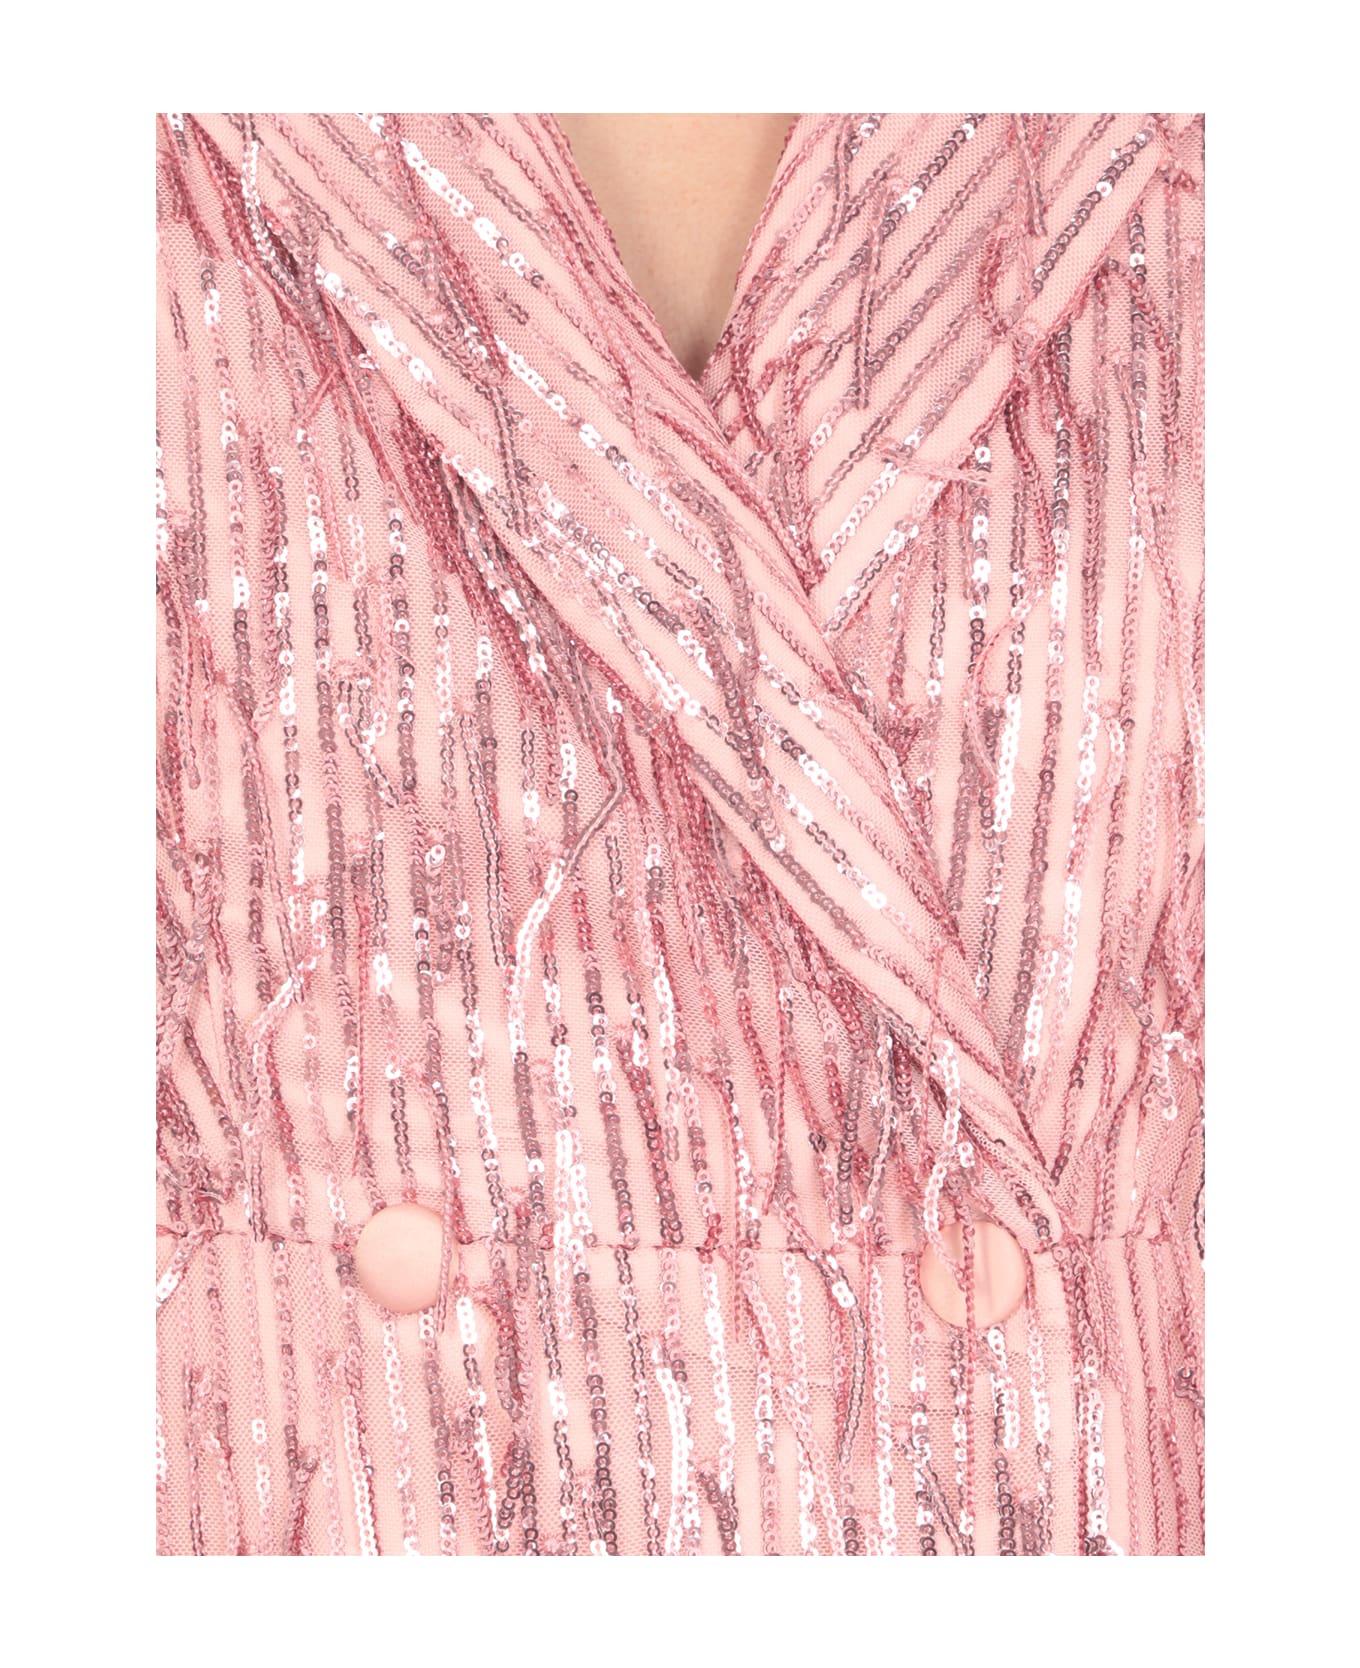 Rotate by Birger Christensen Blazer Dress With Paillettes - Pink